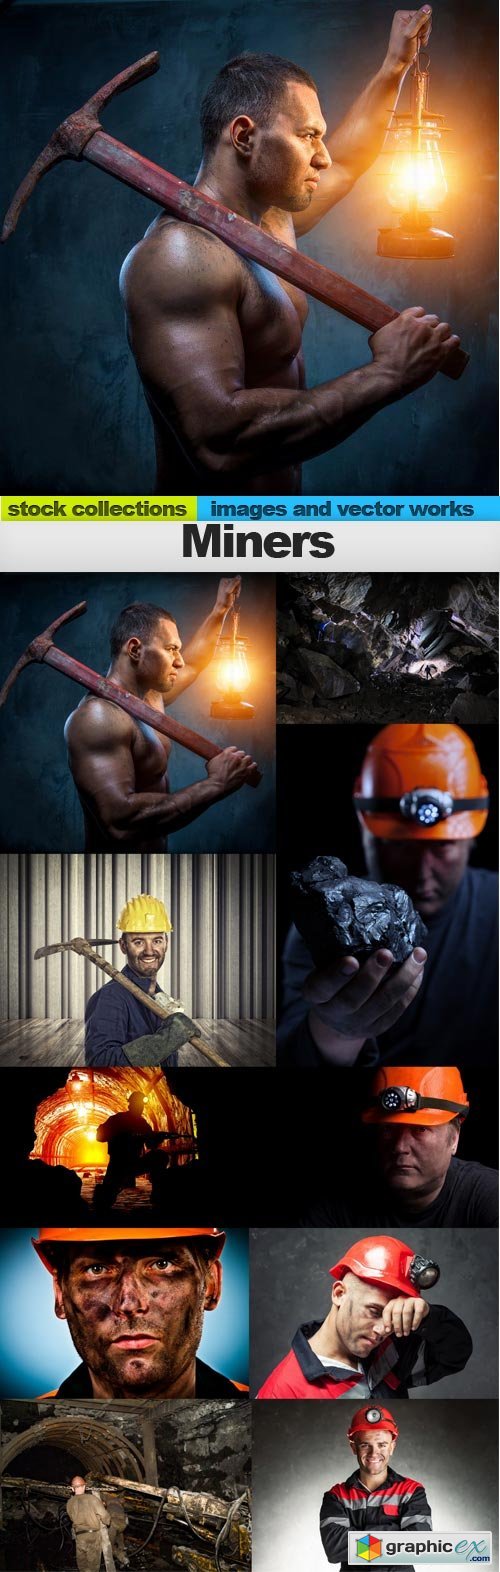 Miners, 10 x UHQ JPEG